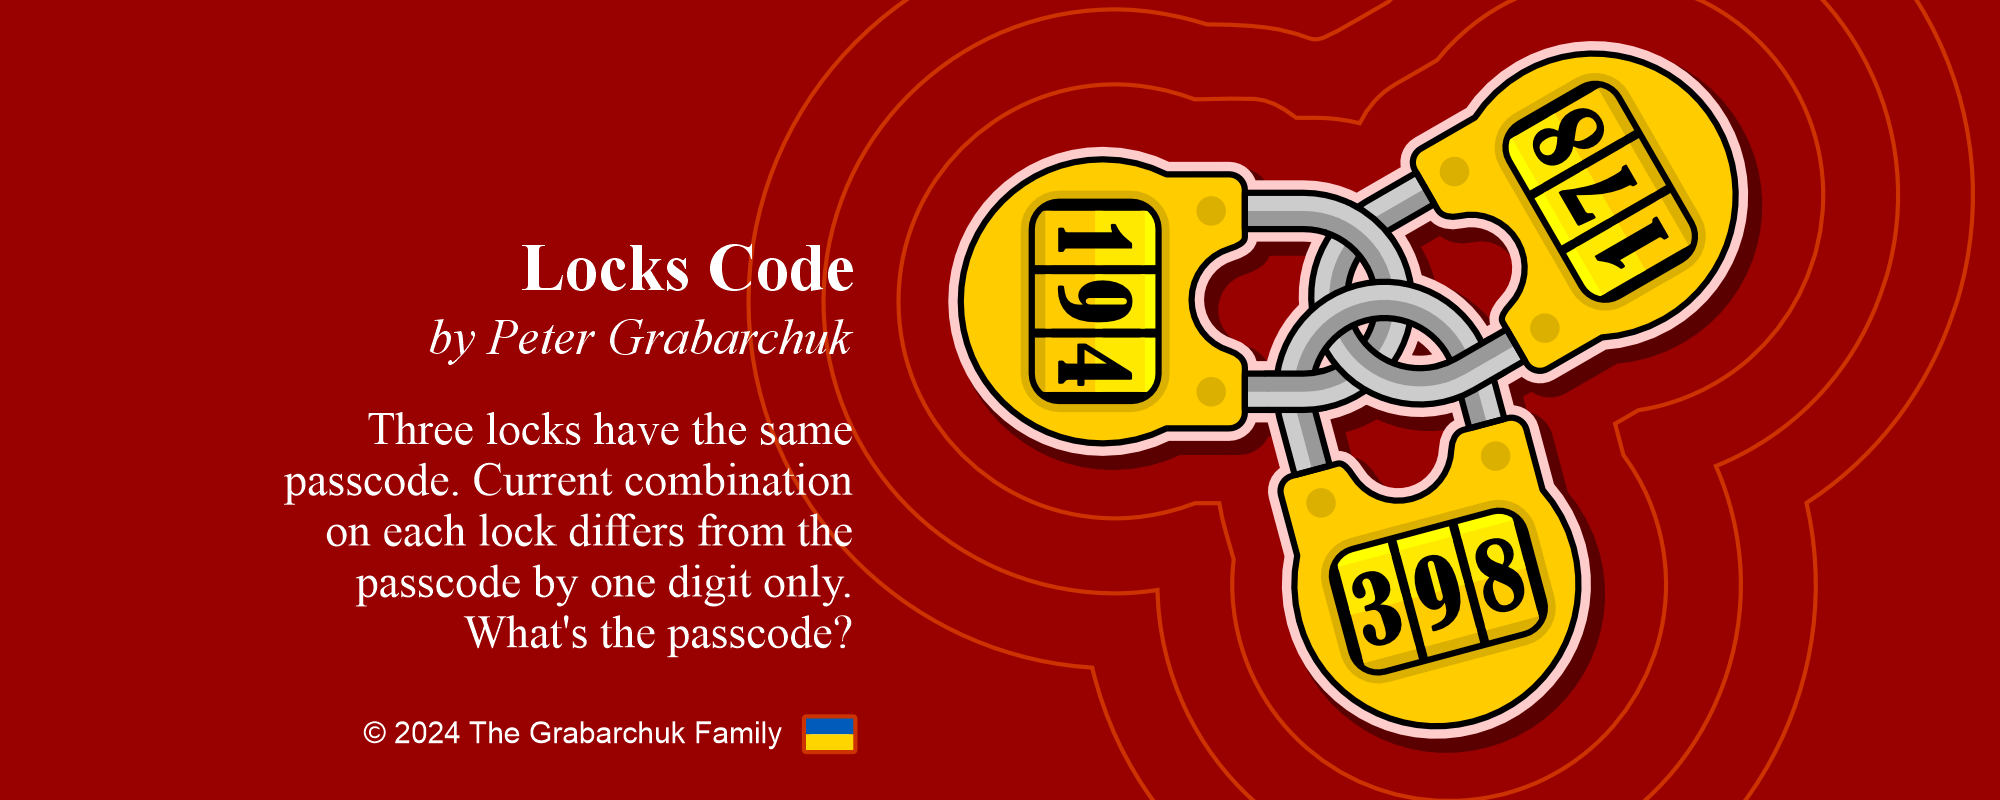 Locks Code by Peter Grabarchuk